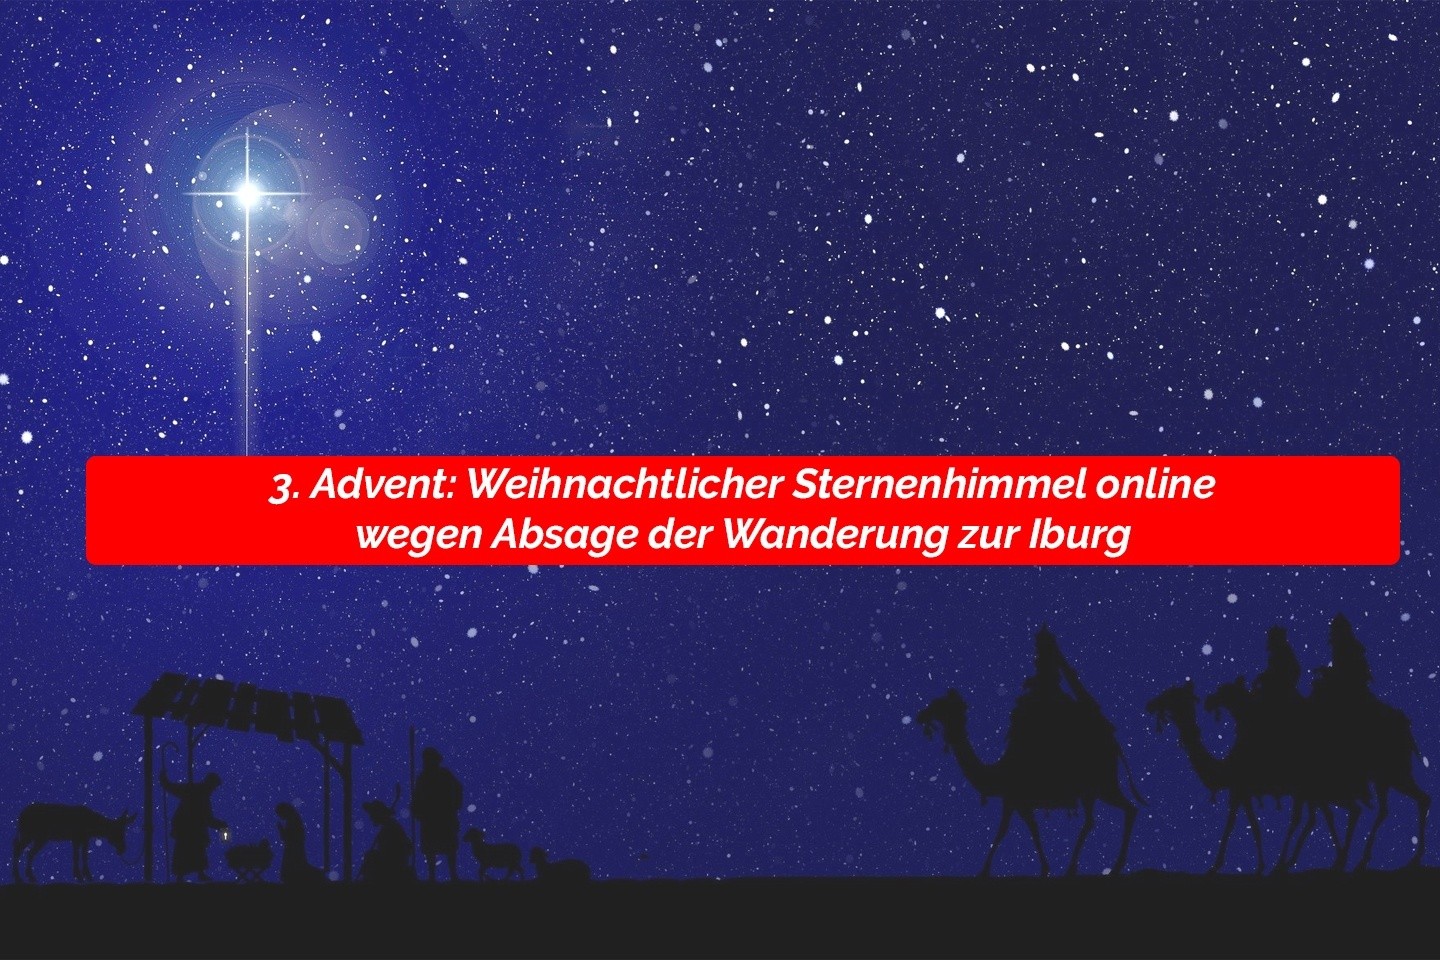 3. Advent: Weihnachtlicher Sternenhimmel online